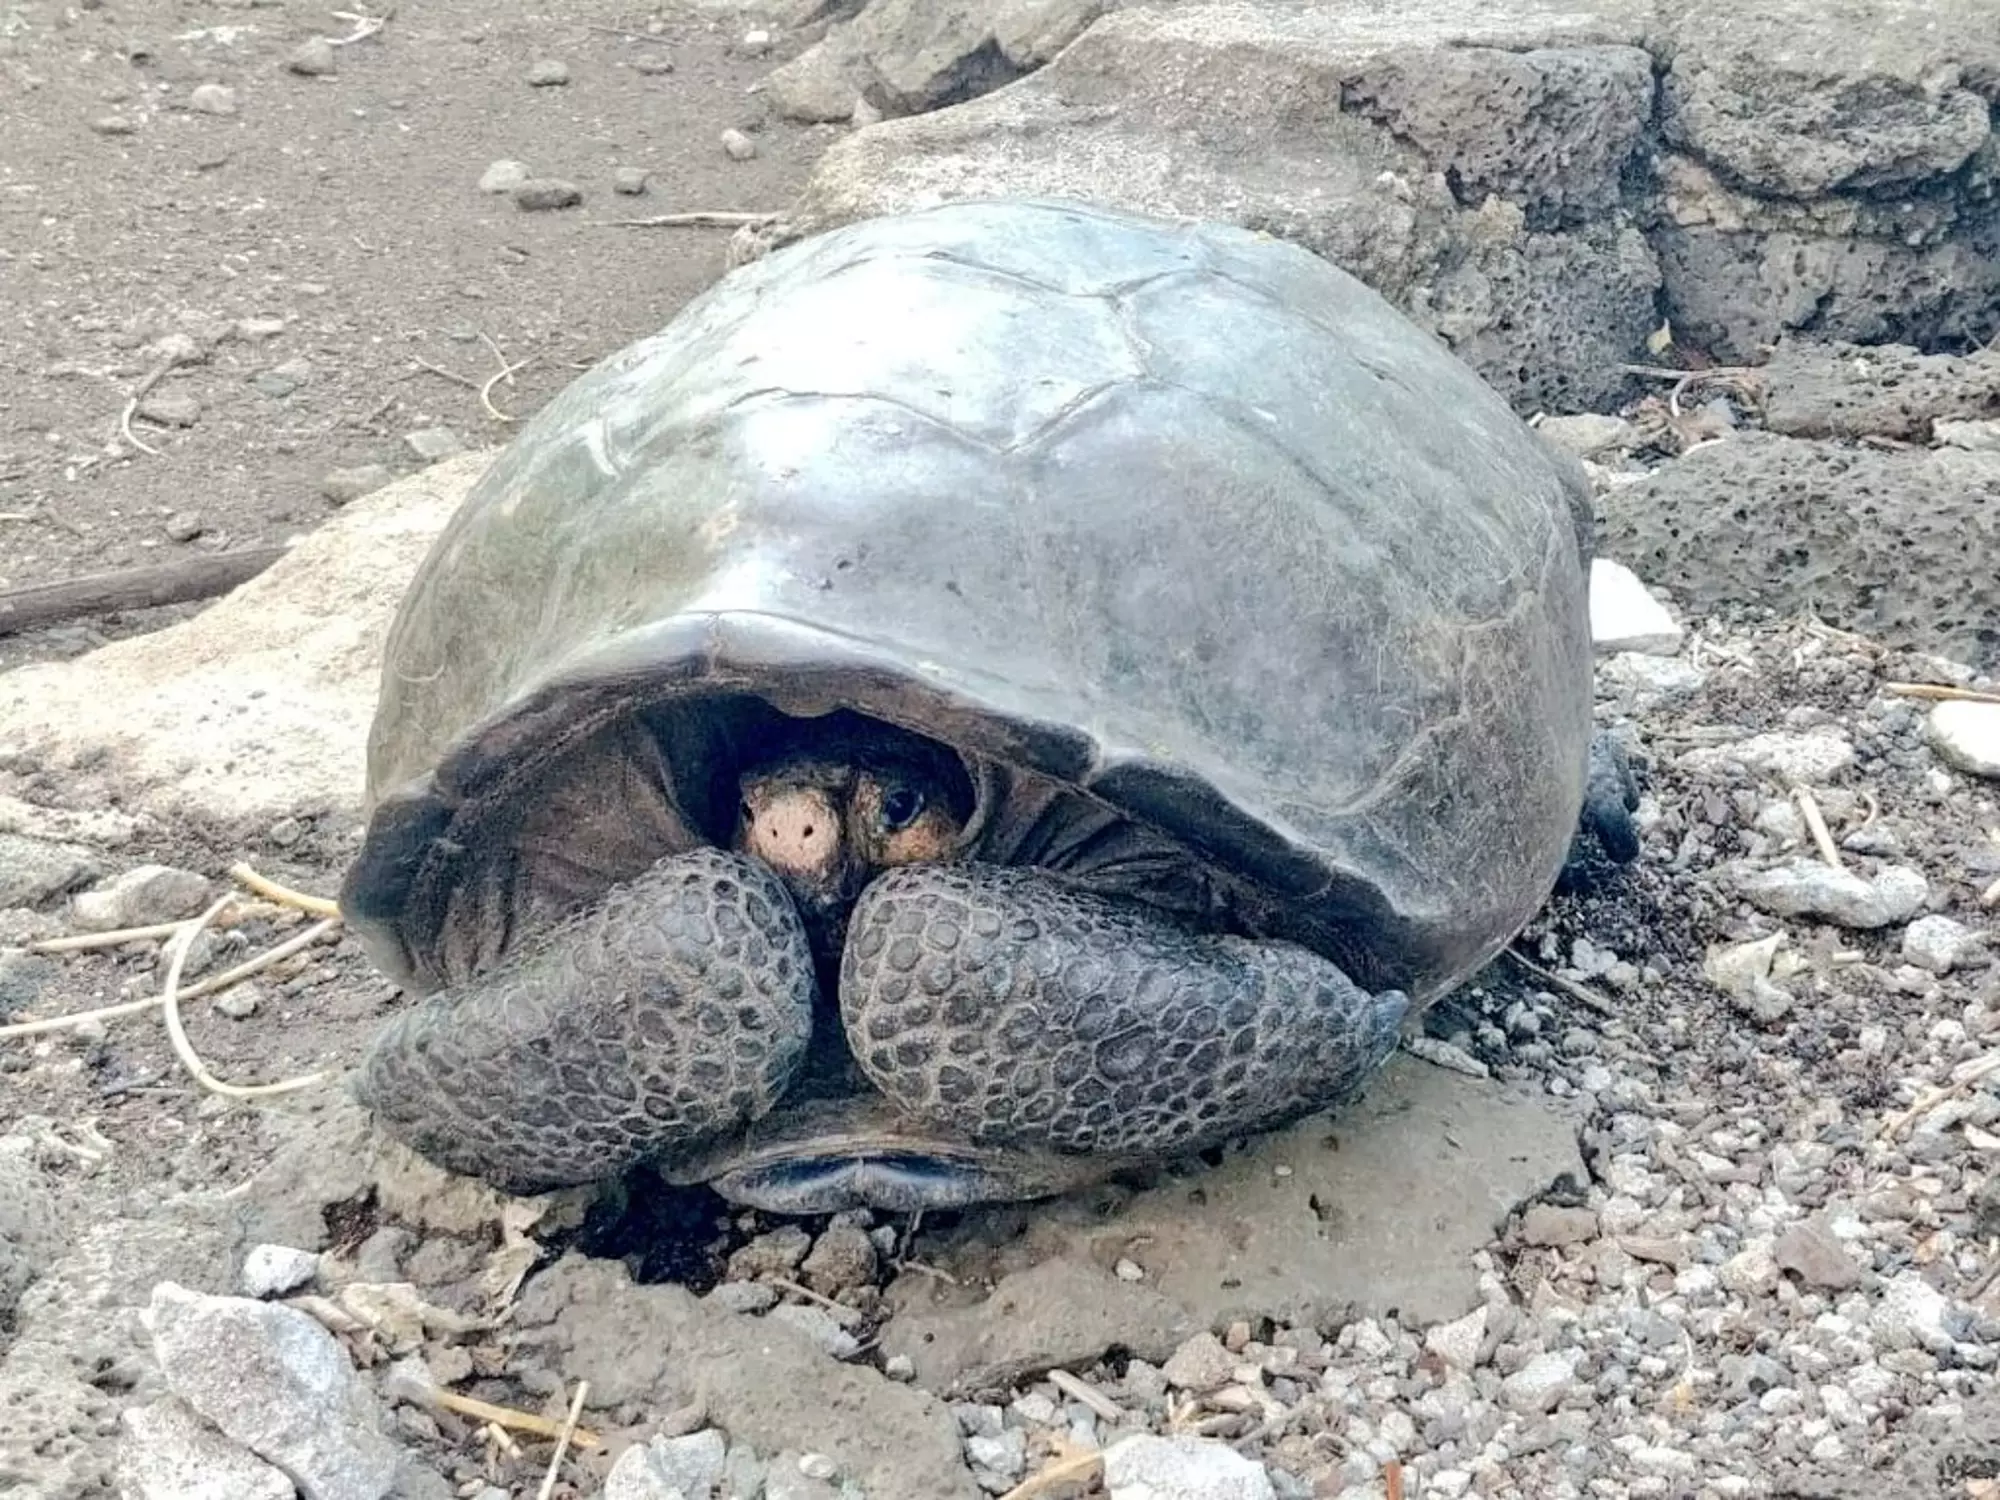 Here she is, the adult female Fernandina Giant Tortoise.